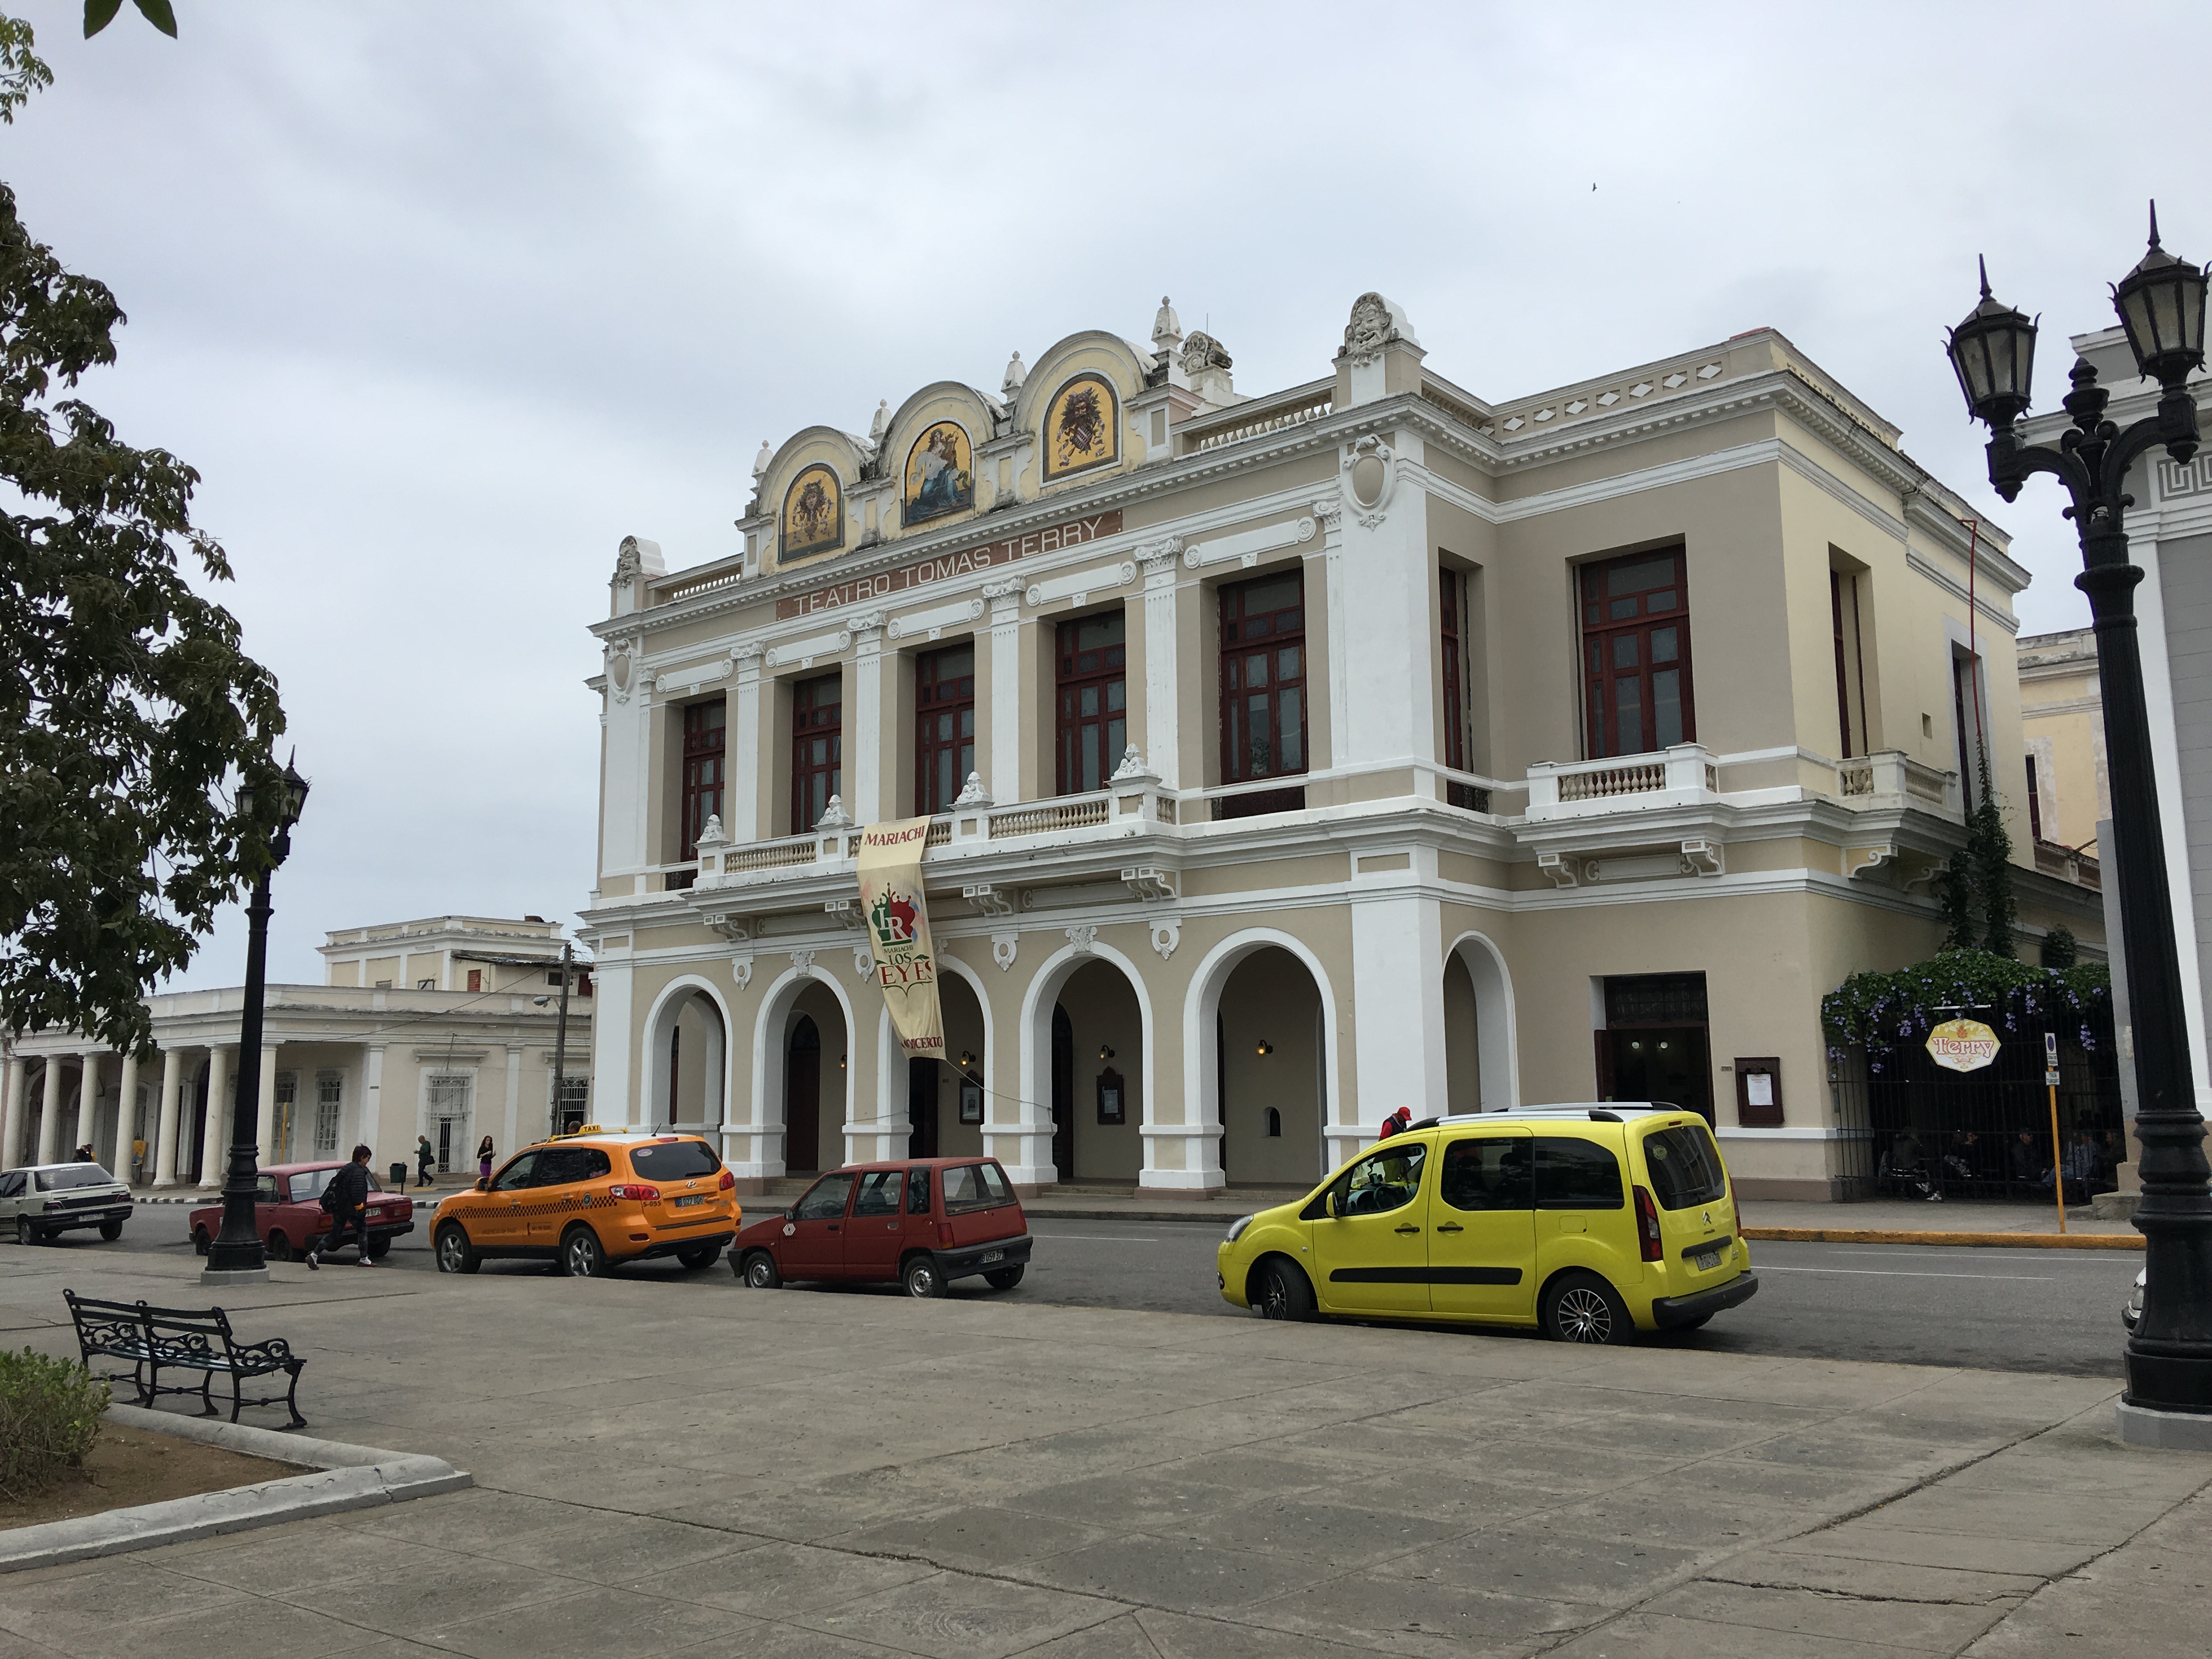 这是古巴圣克拉拉市的托马斯. 特里剧院 ( Teatro tomas terry ), 有一百多年历